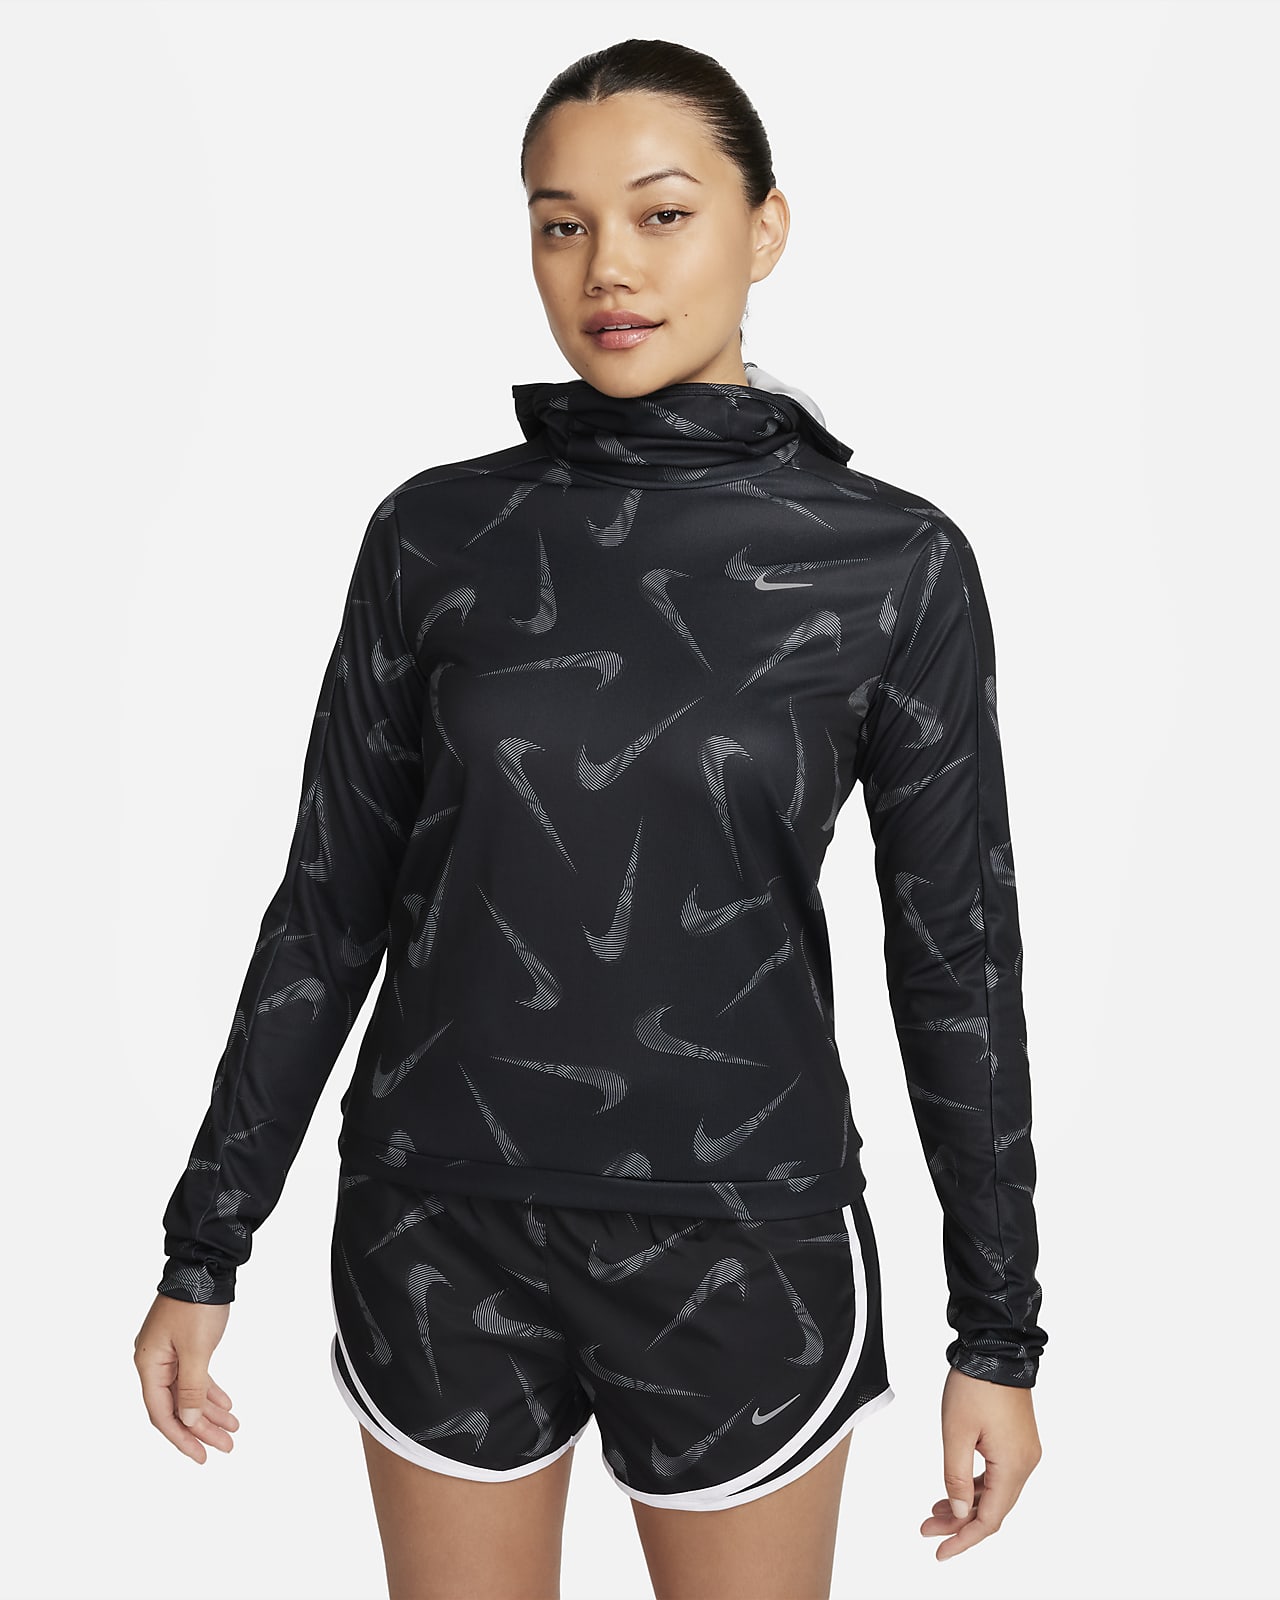 Casaco de running estampado com capuz Nike Swoosh para mulher